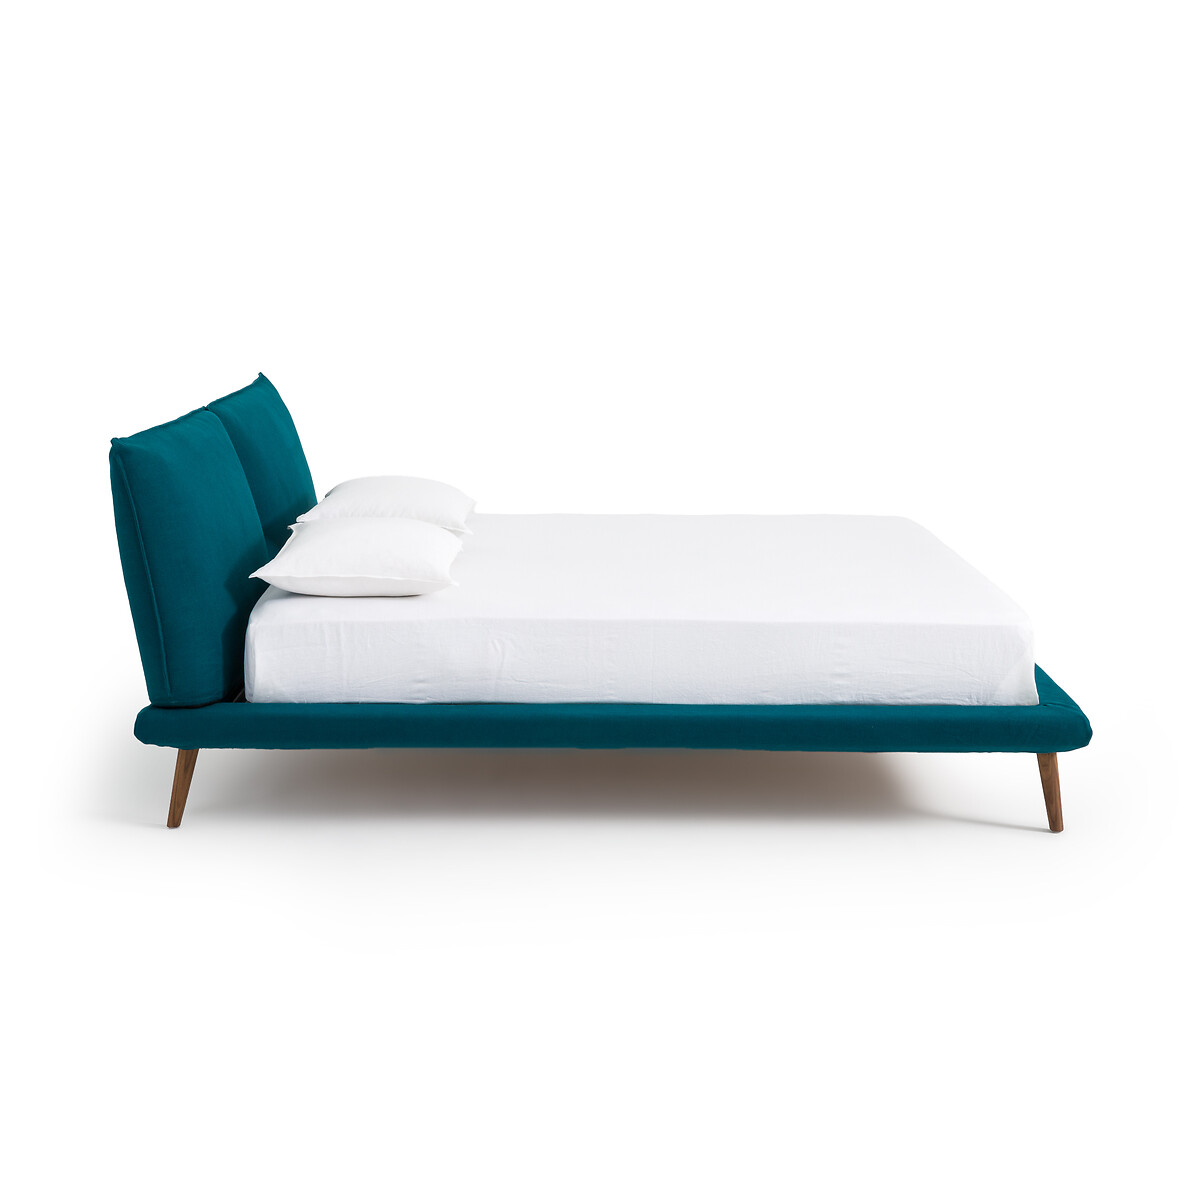 Кровать изо льна без кроватного основания Aurore дизайн Э  Галлина  160 x 200 см синий LaRedoute, размер 160 x 200 см - фото 2